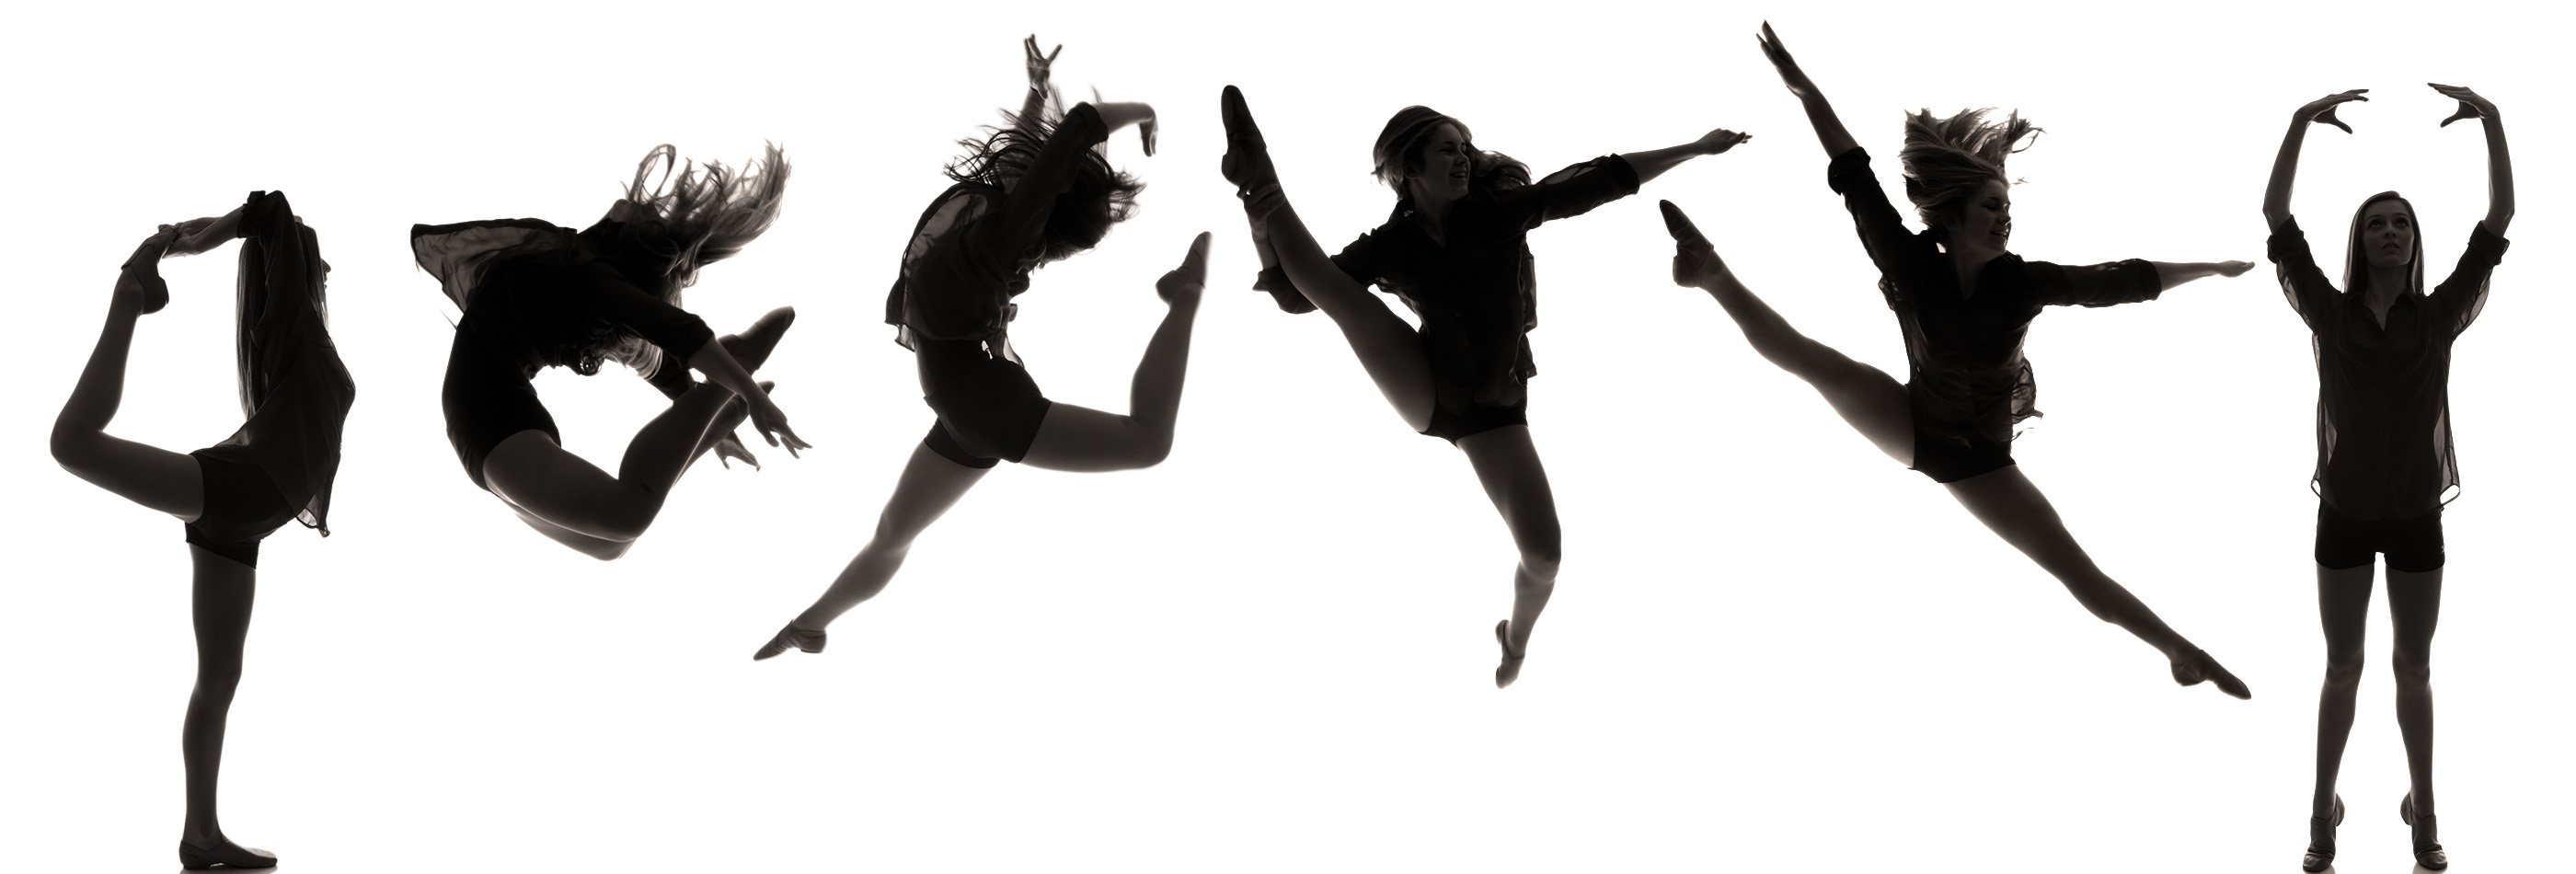 dance team clipart free - photo #33